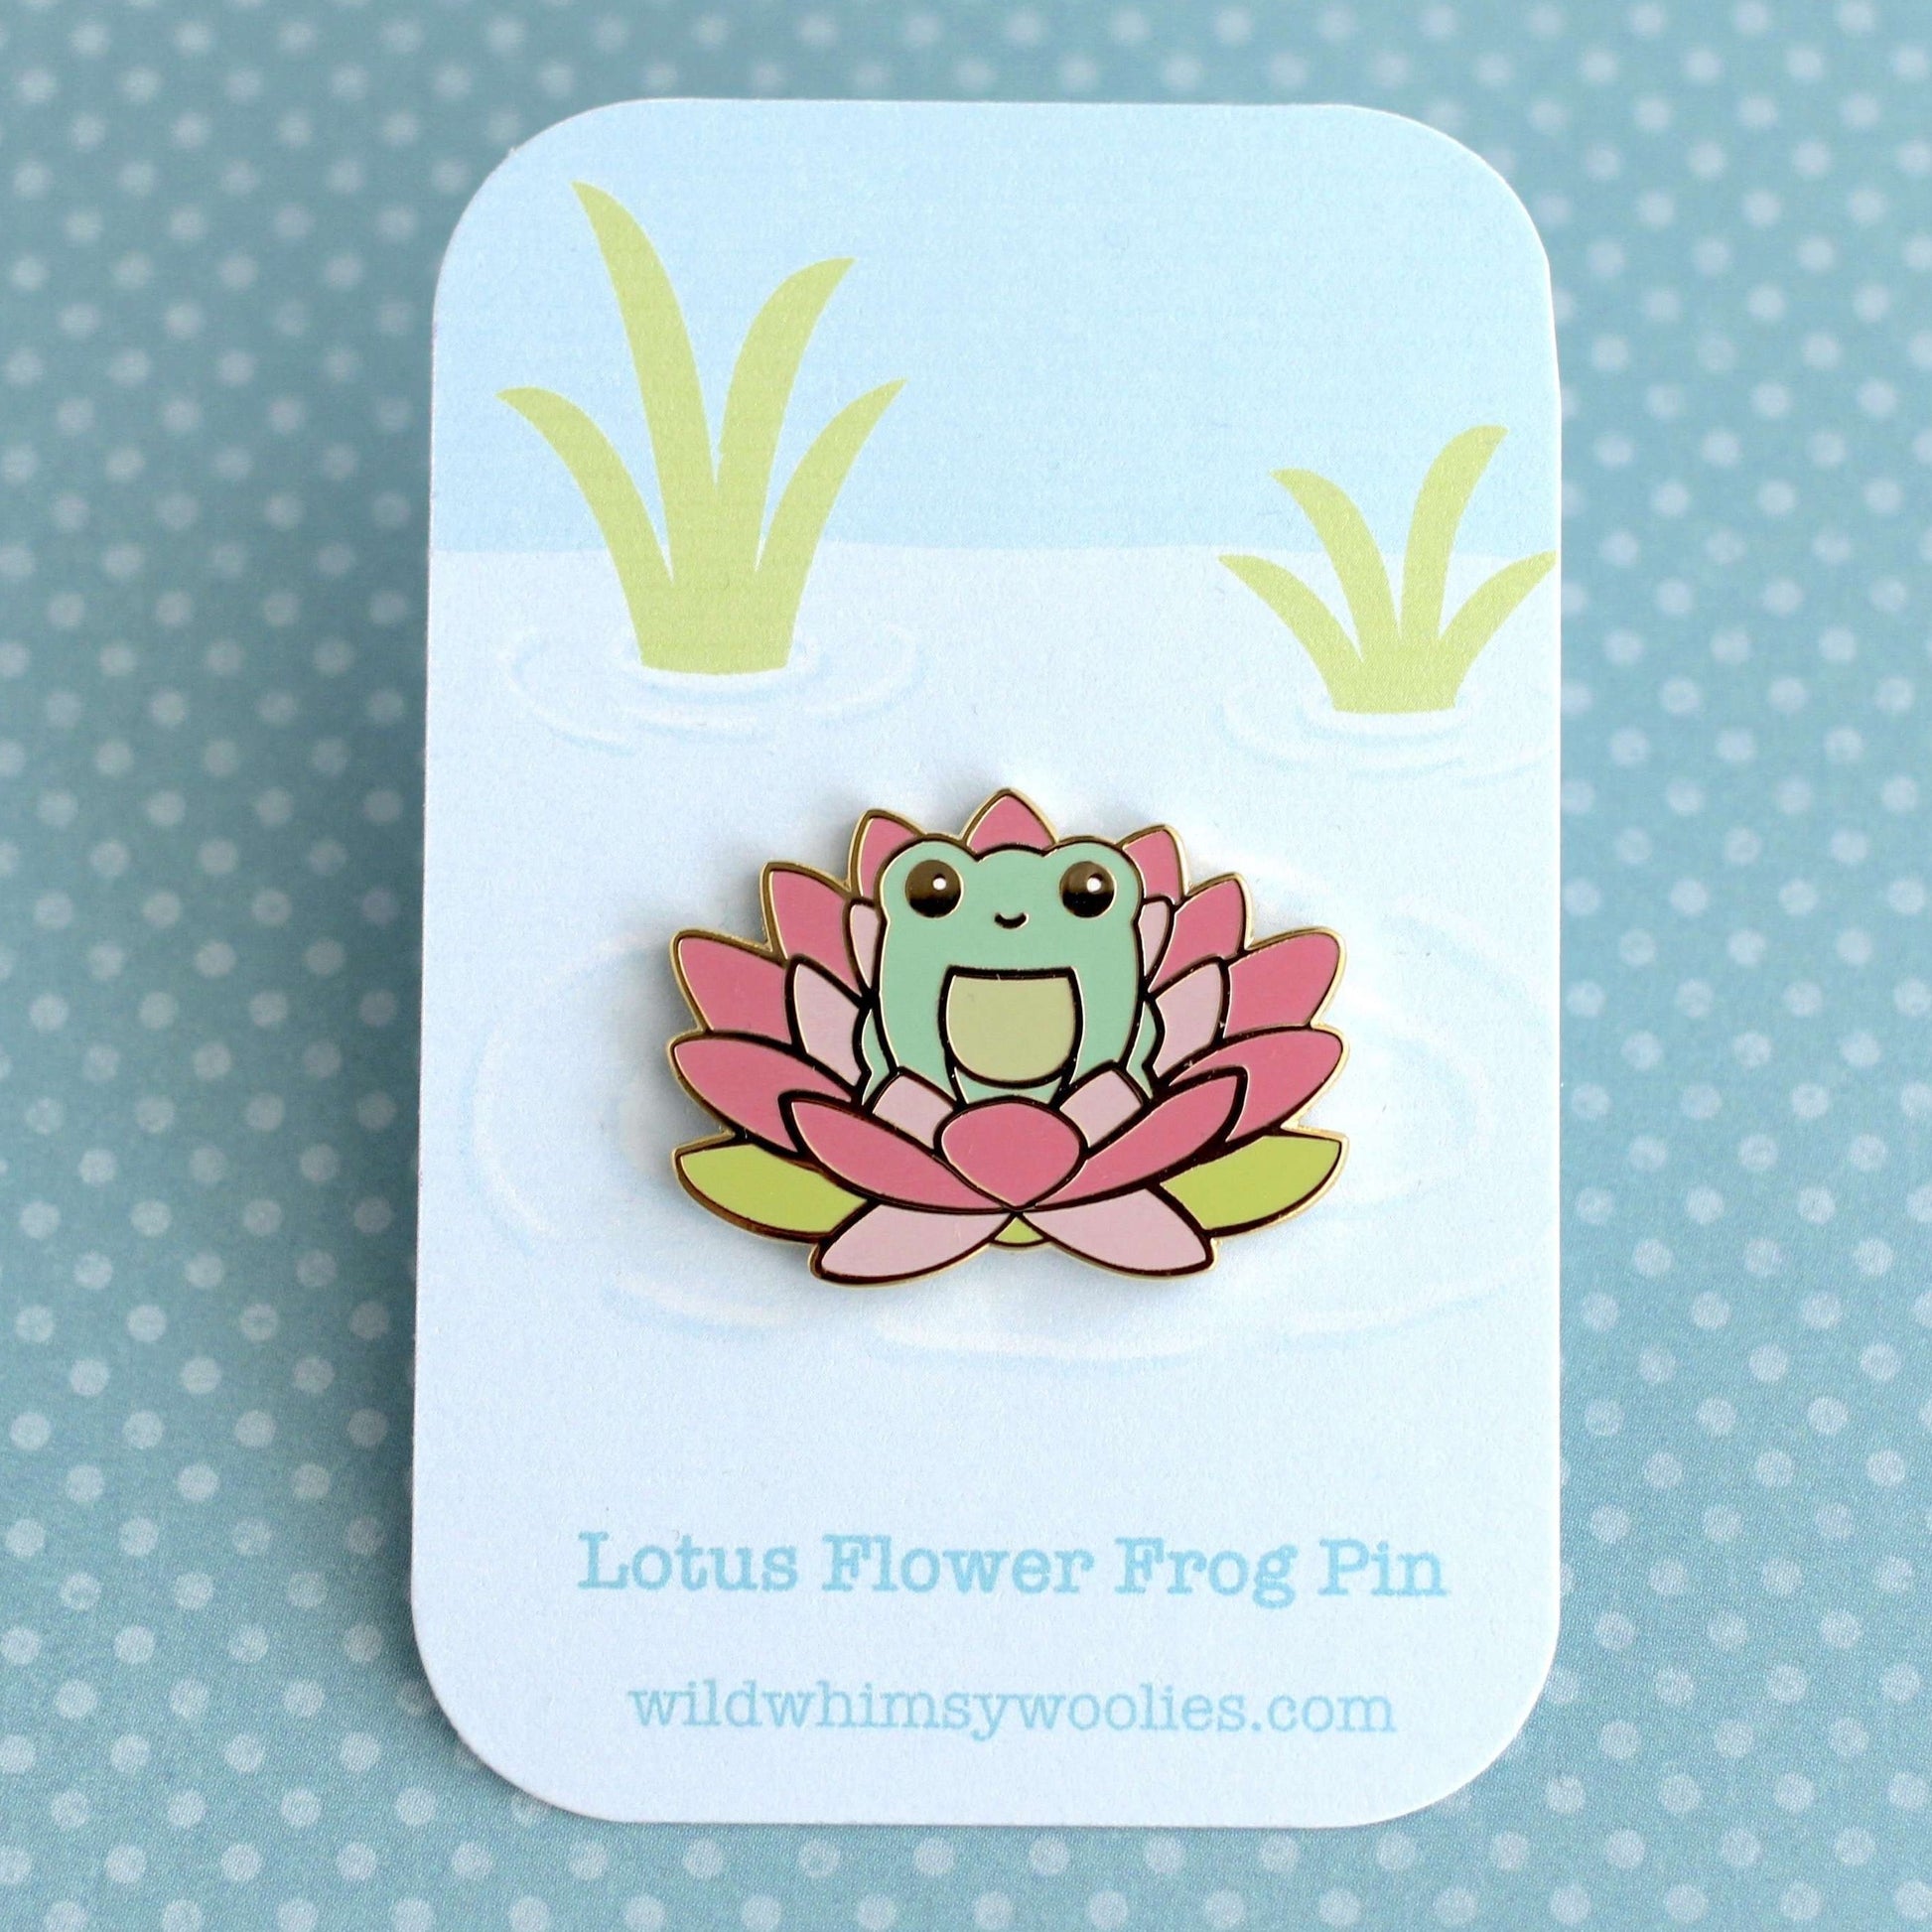 Wild Whimsy Woolies - Pink Lotus Flower Frog Pin - Hard Enamel Pin - Cute  Frog